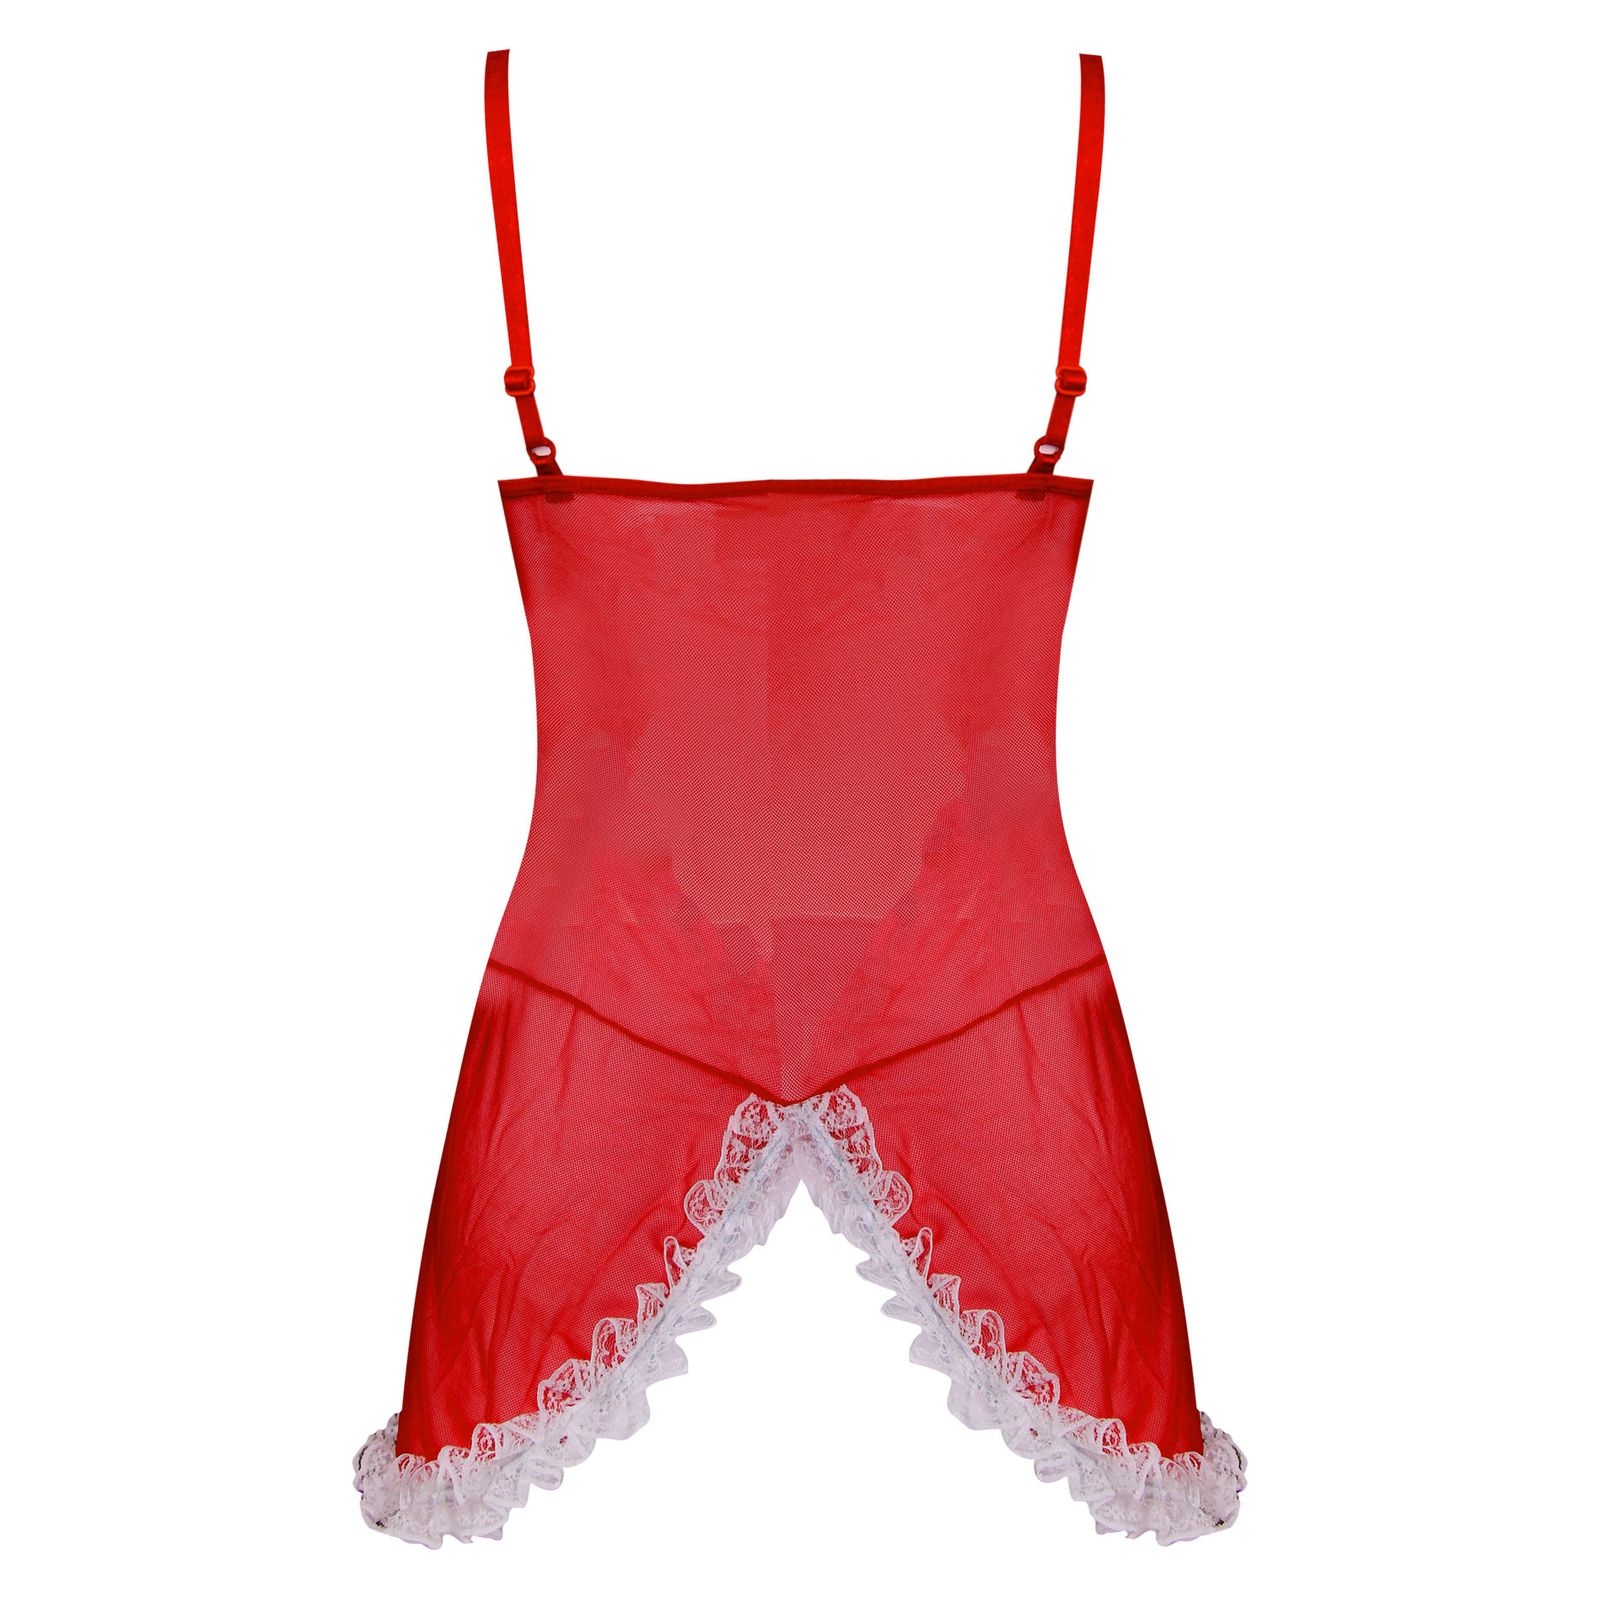 ست لباس خواب زنانه ماییلدا مدل فانتزی کد 3684-413 رنگ قرمز -  - 3